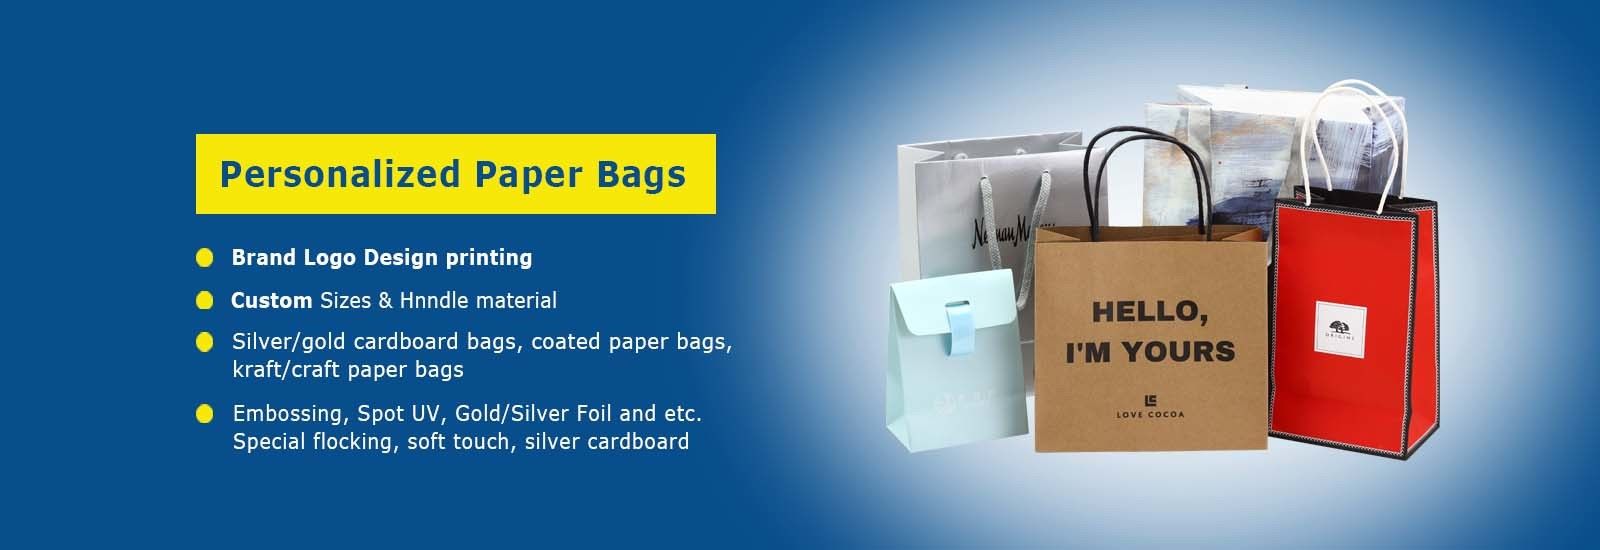 Бумажные хозяйственные сумки